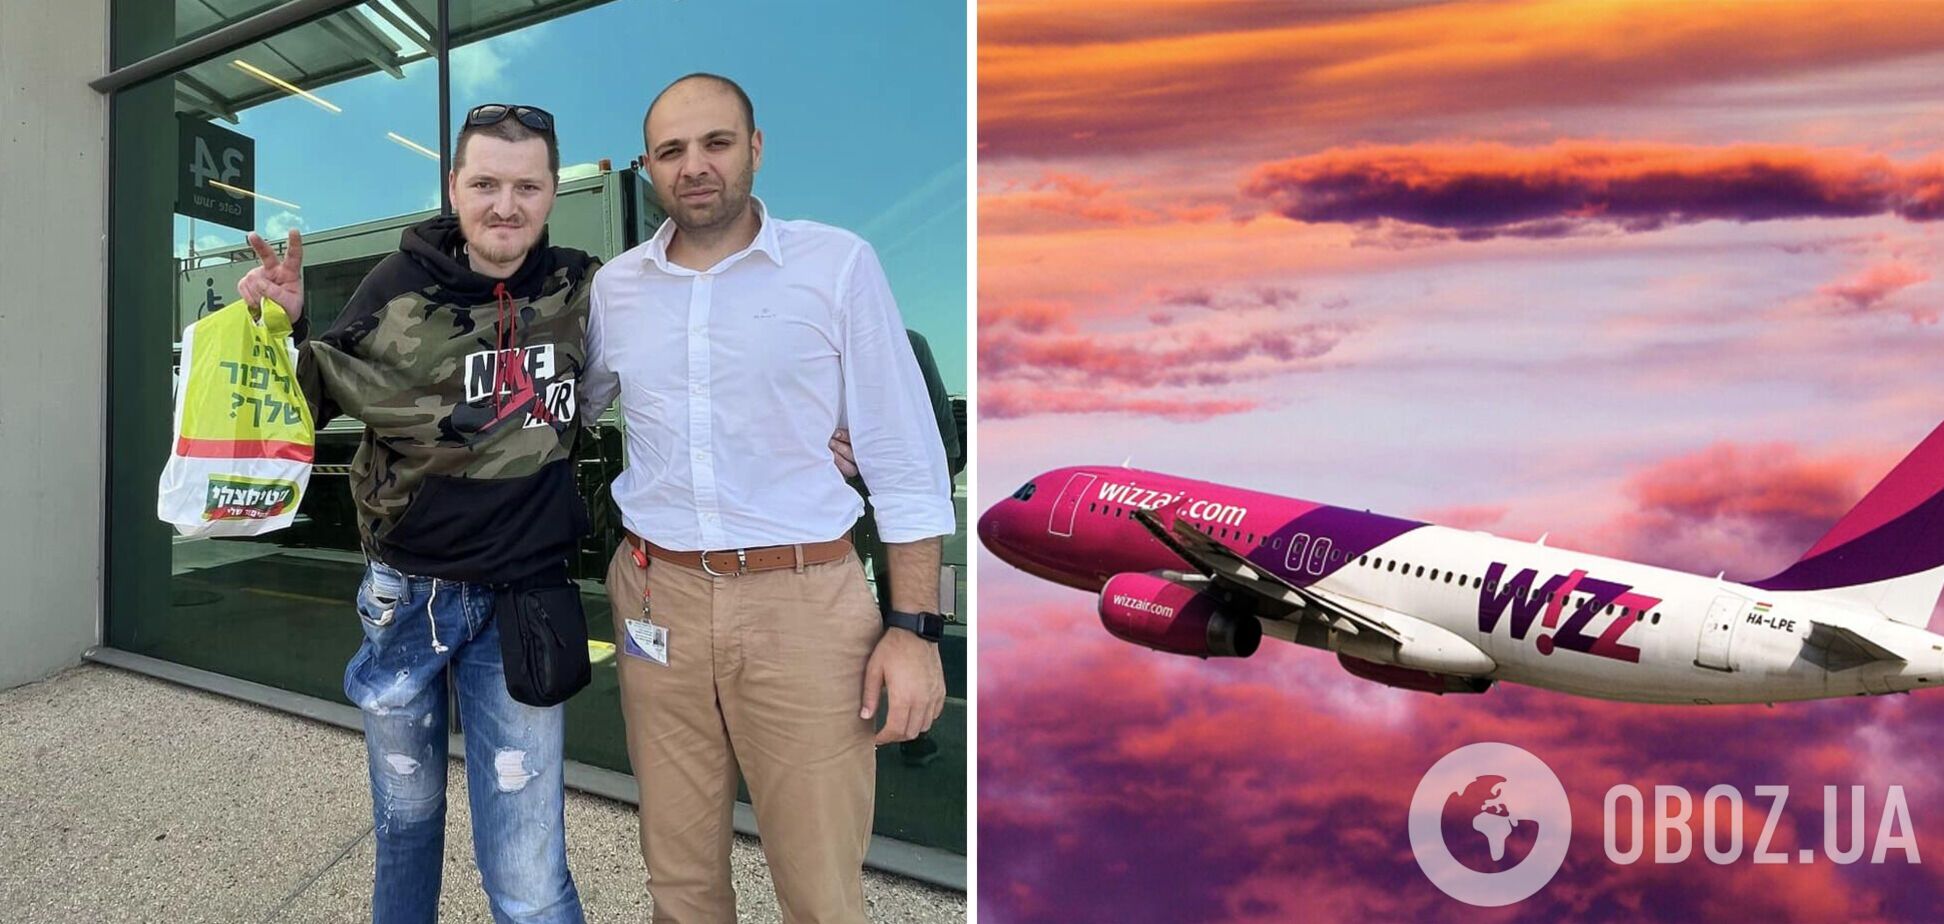 МИД разыскал украинца, которому отказали в посадке на самолет в Израиле из-за протеза: новые подробности